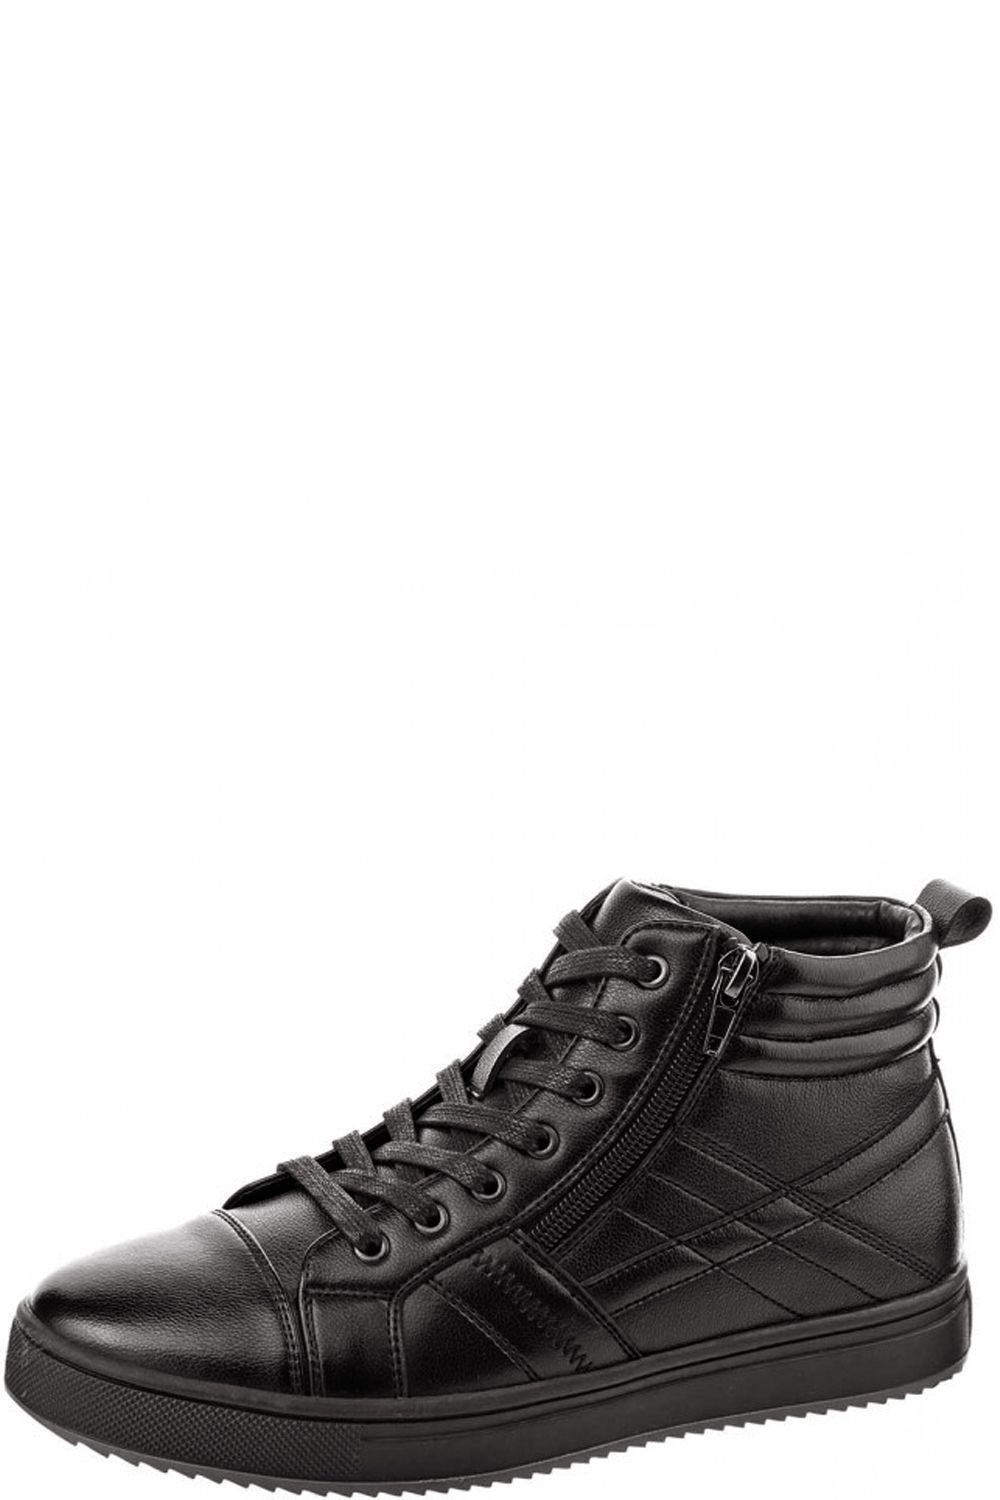 Ботинки Tesoro, размер 40, цвет черный 168679/01-11 - фото 1